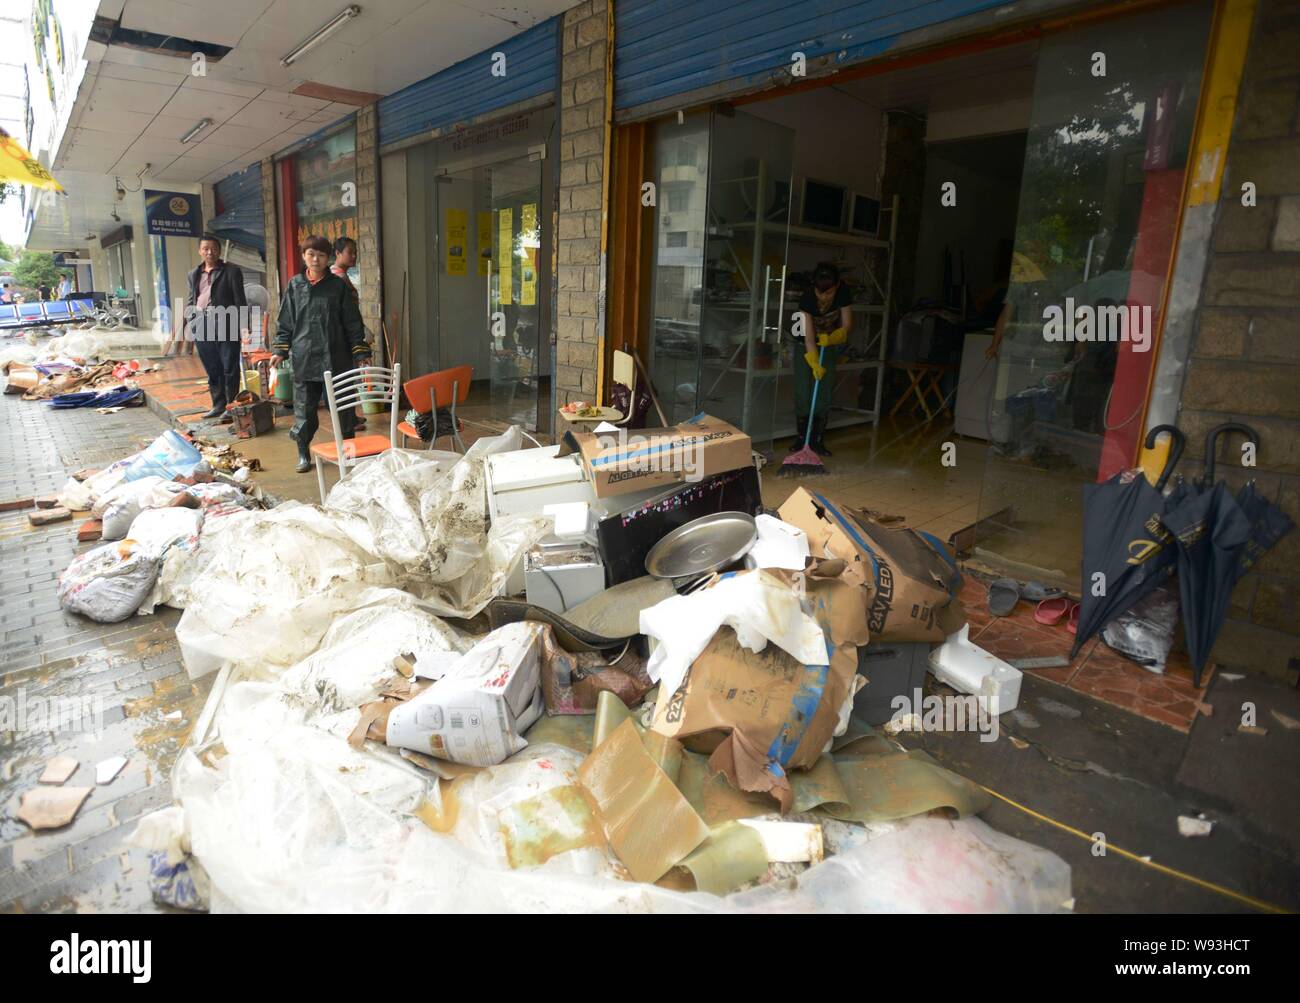 Chinesische Arbeiter clean up Durcheinander verursacht durch Taifun Fitow in Hangzhou, China Zhejiang provinz, 8. Oktober 2013. Ein massiver Taifun, forder hatte Stockfoto